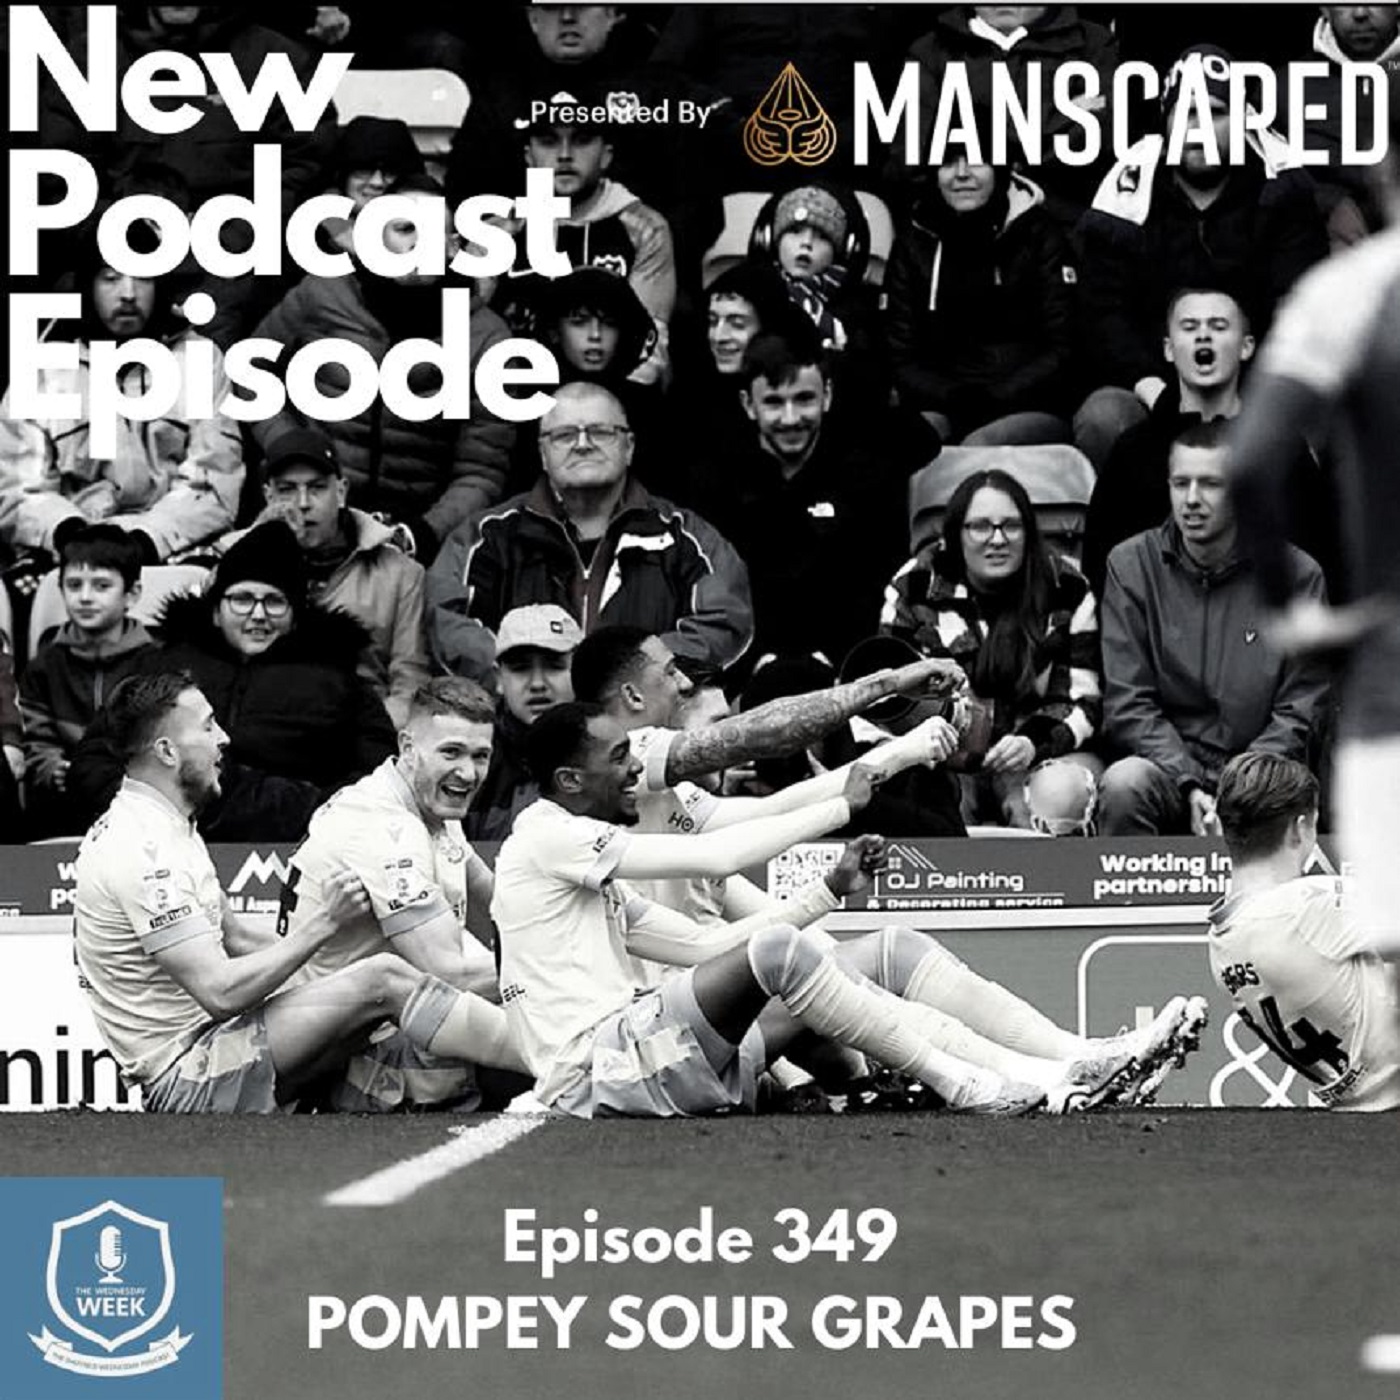 Pompey Sour Grapes